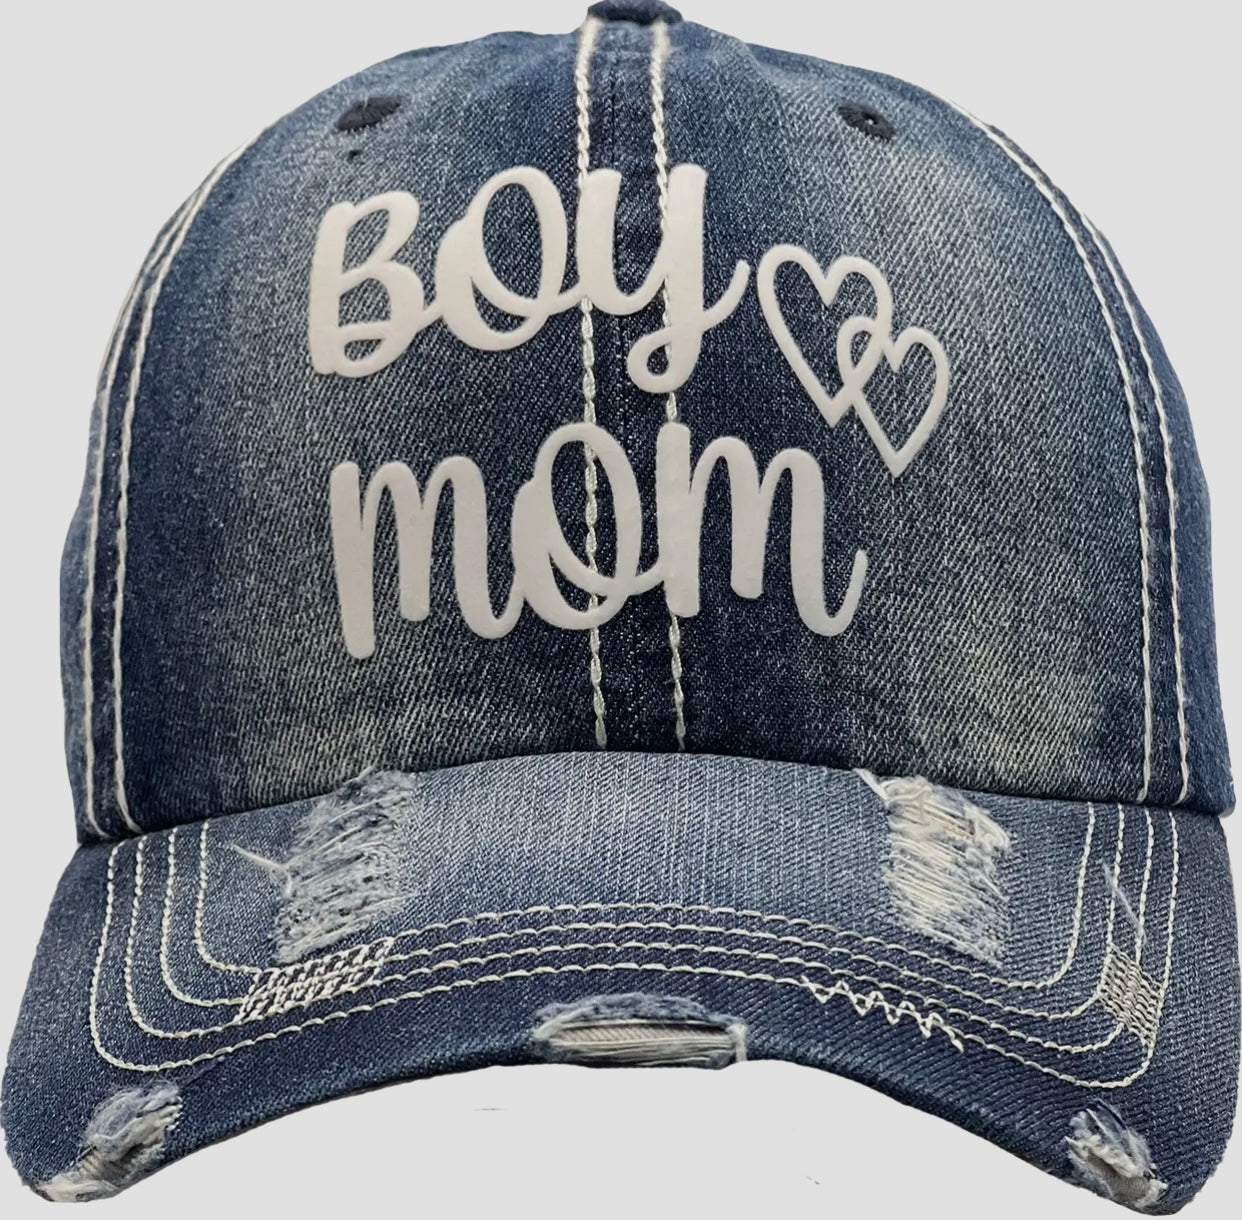 Boy Mom Hat